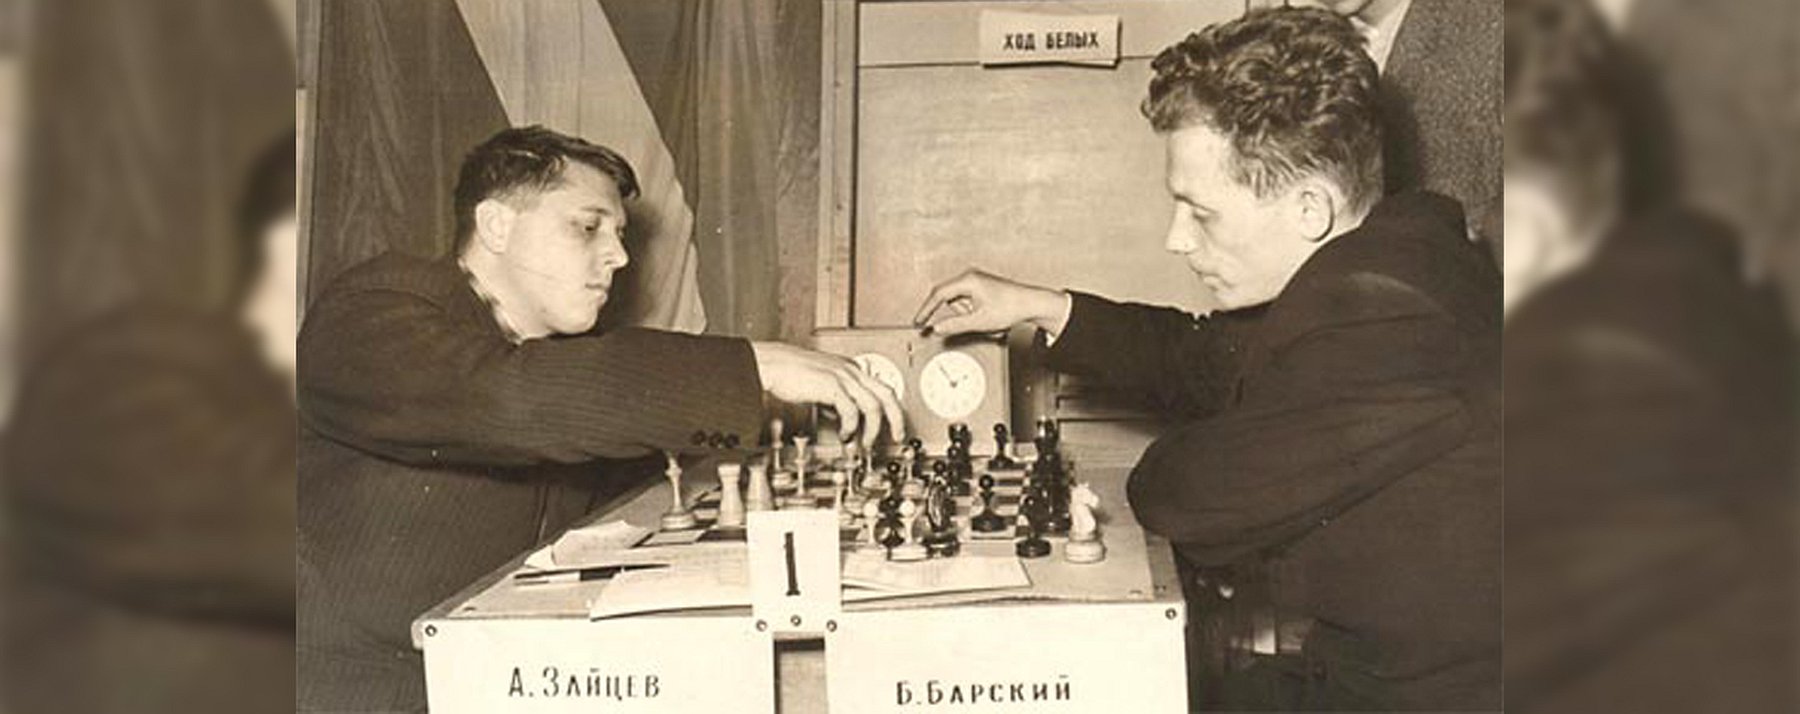 Зайцев Александр Николаевич шахматист